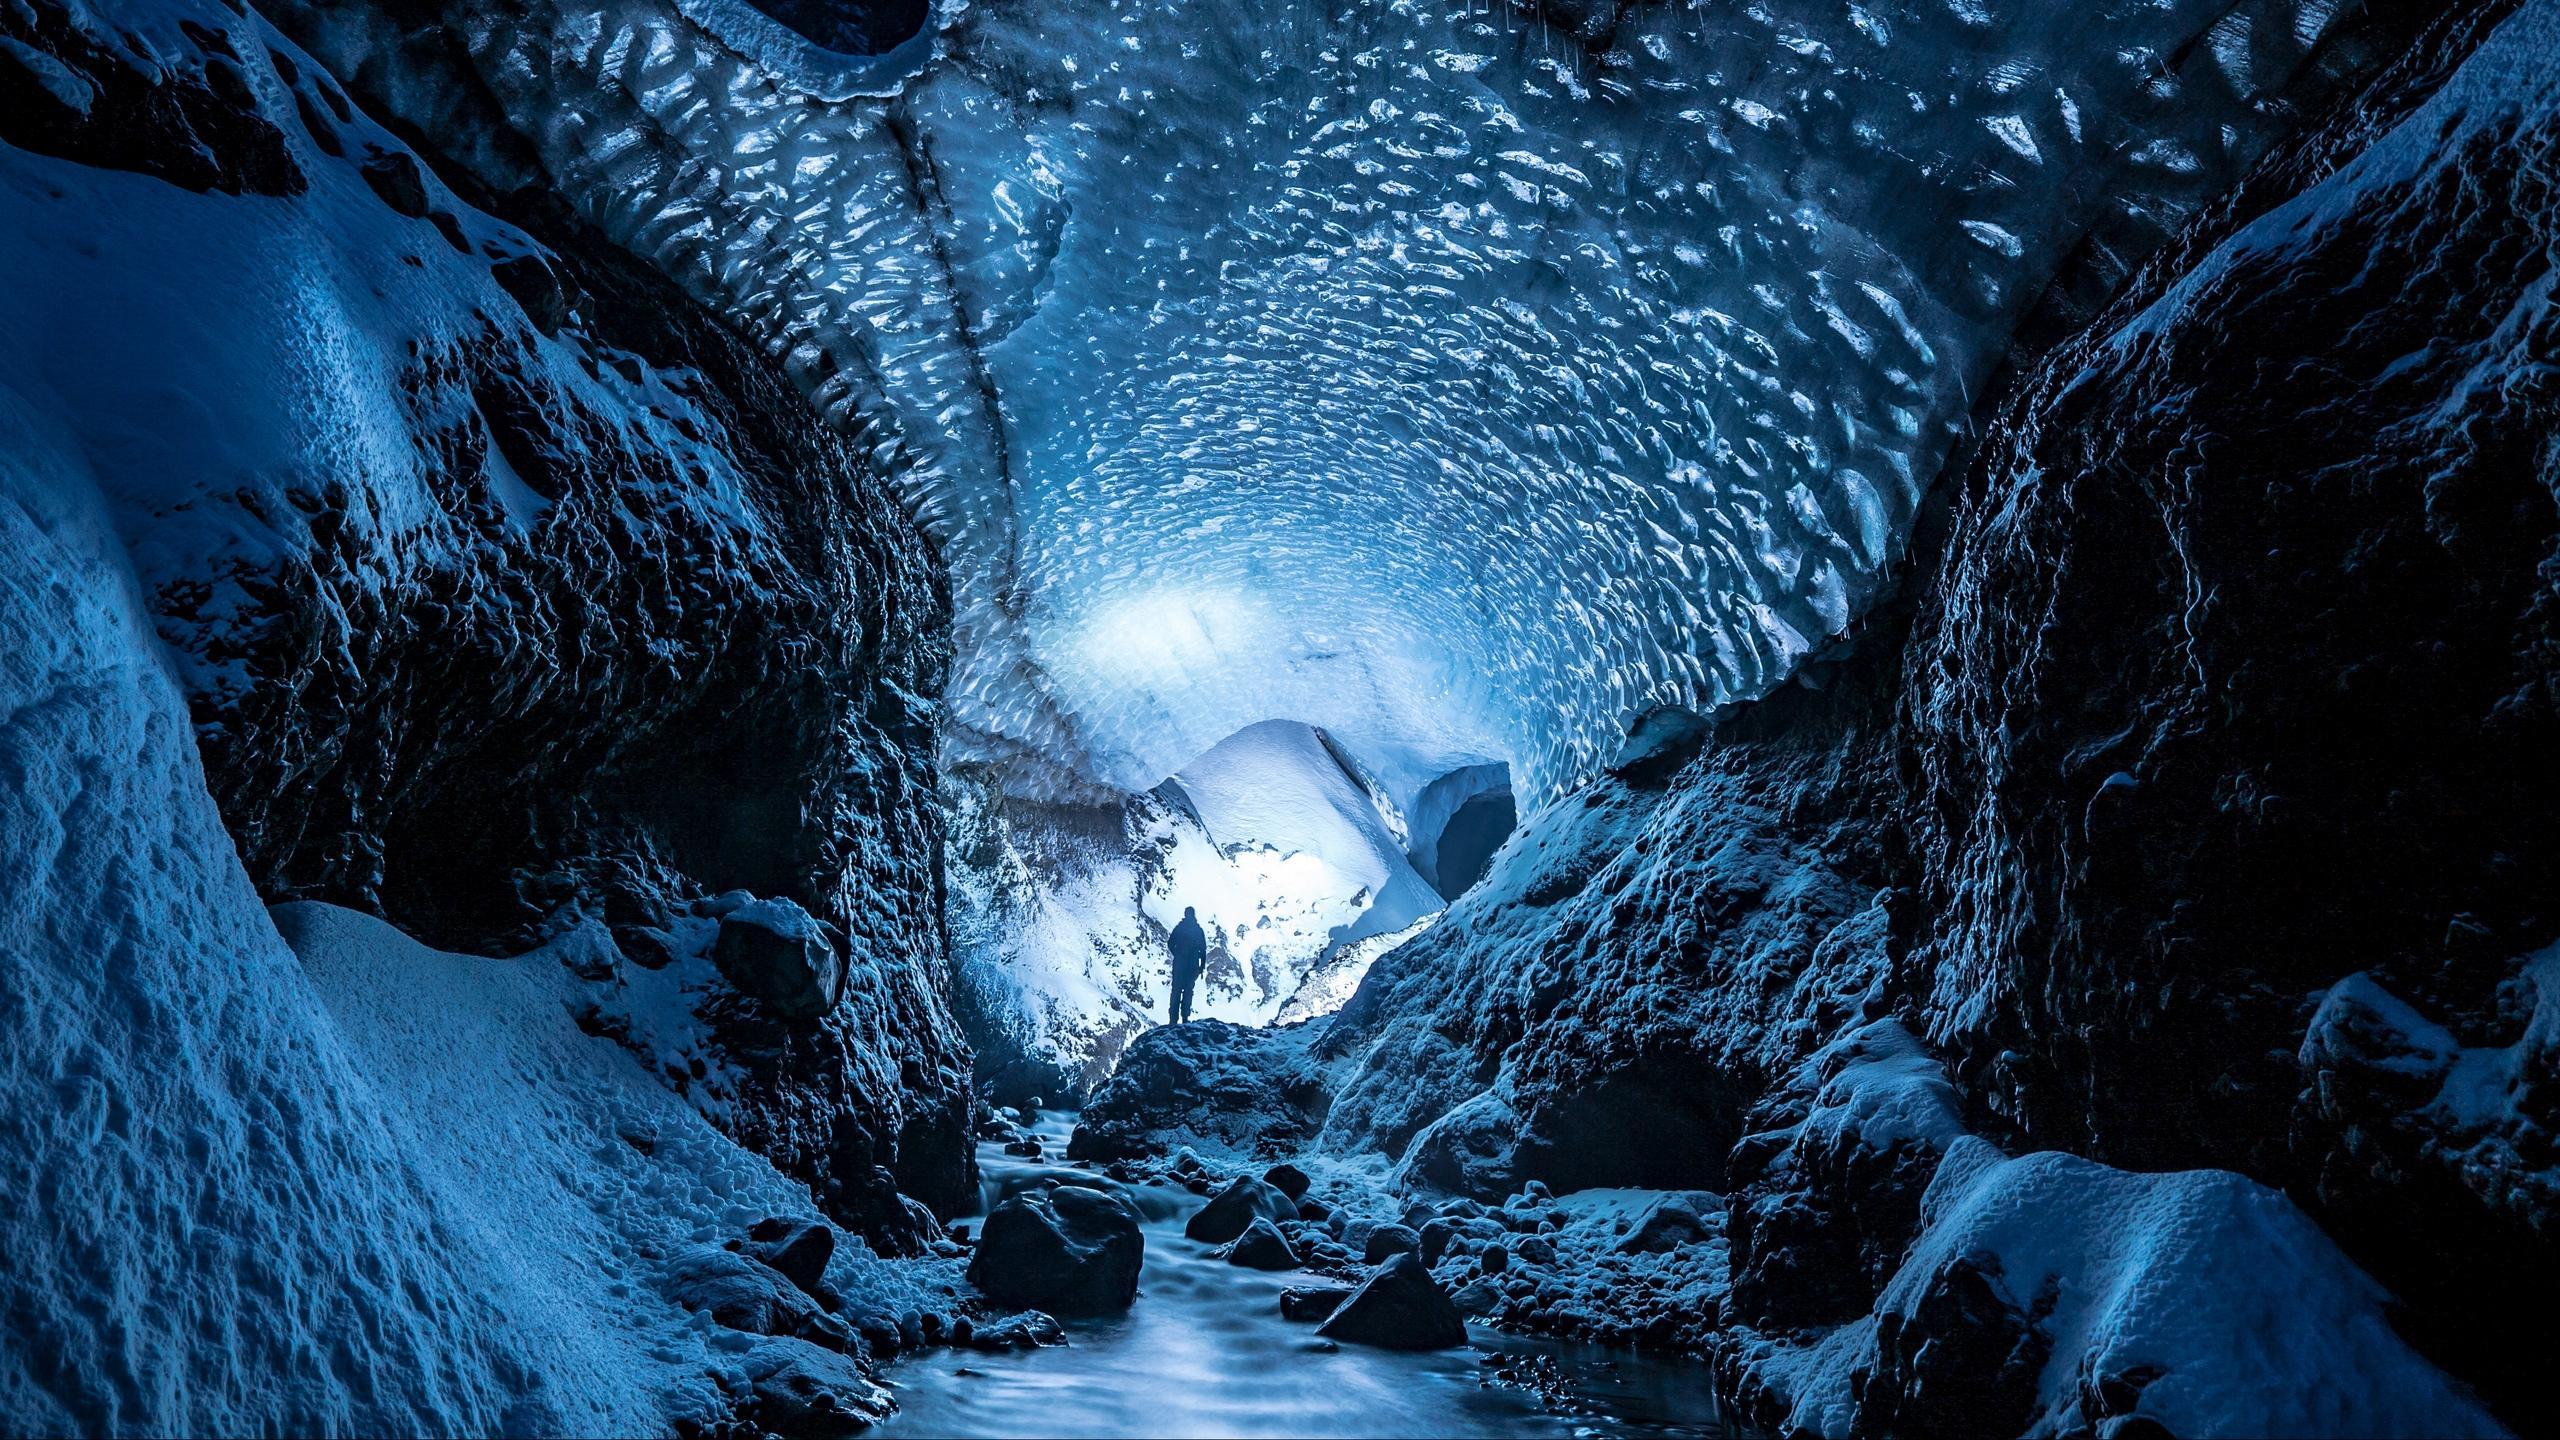 Download wallpaper 2560x1440 glacier, cave, man, ice, snow